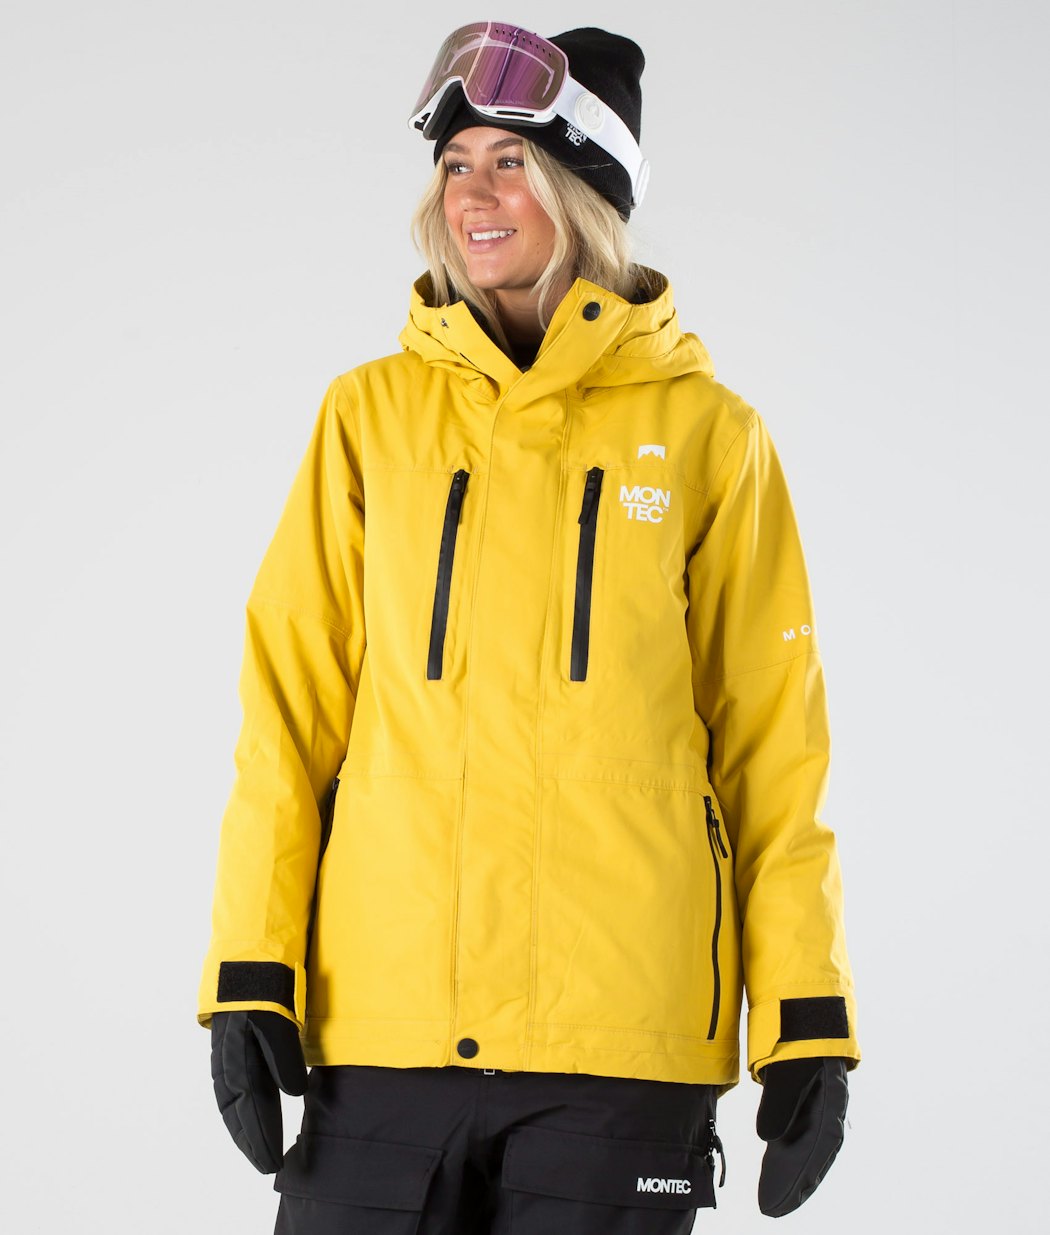 Fawk W 2019 Snowboard Jacket Women Yellow